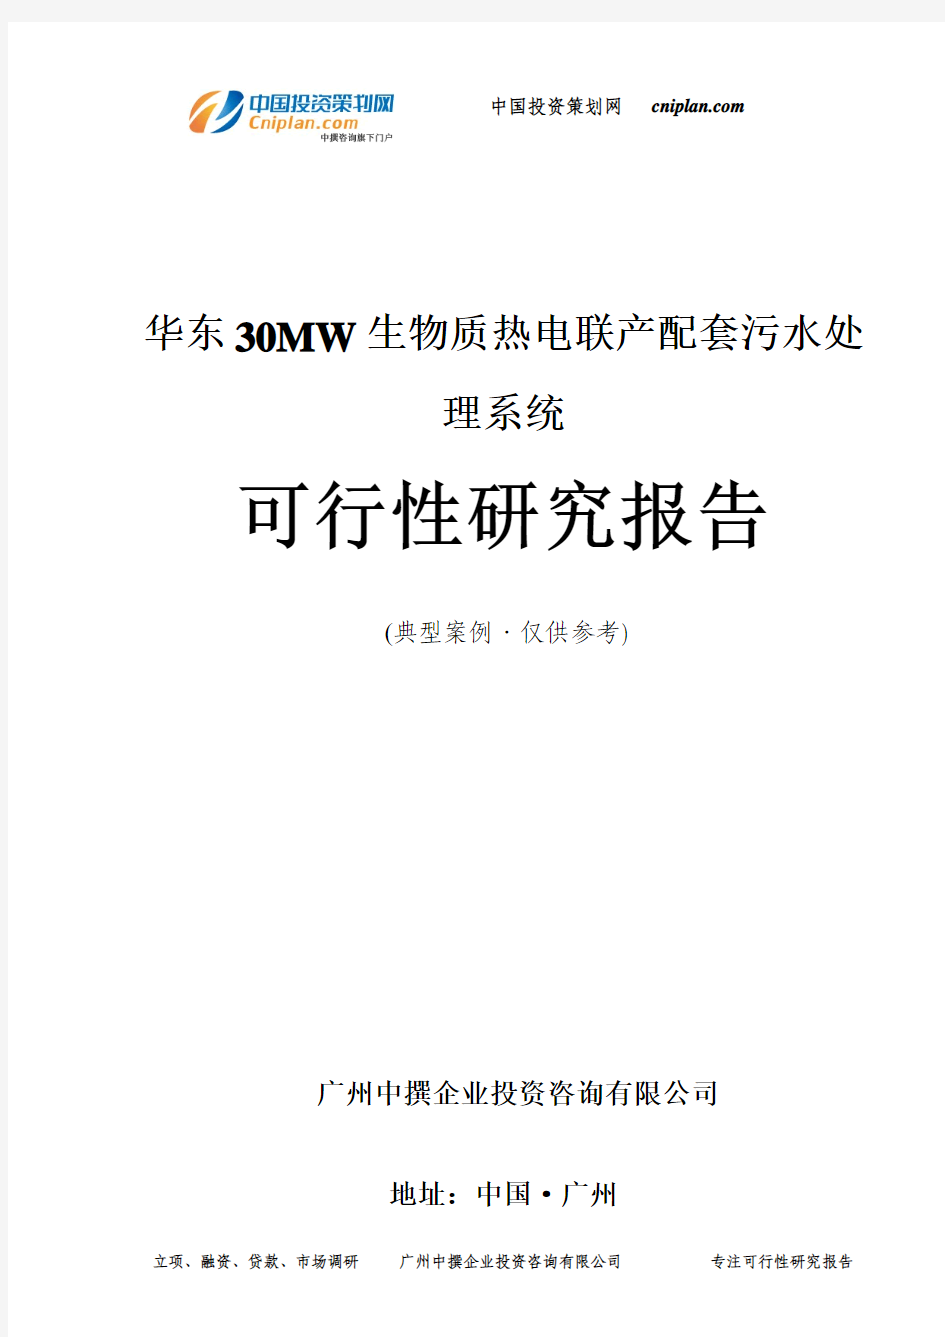 华东30MW生物质热电联产配套污水处理系统可行性研究报告-广州中撰咨询